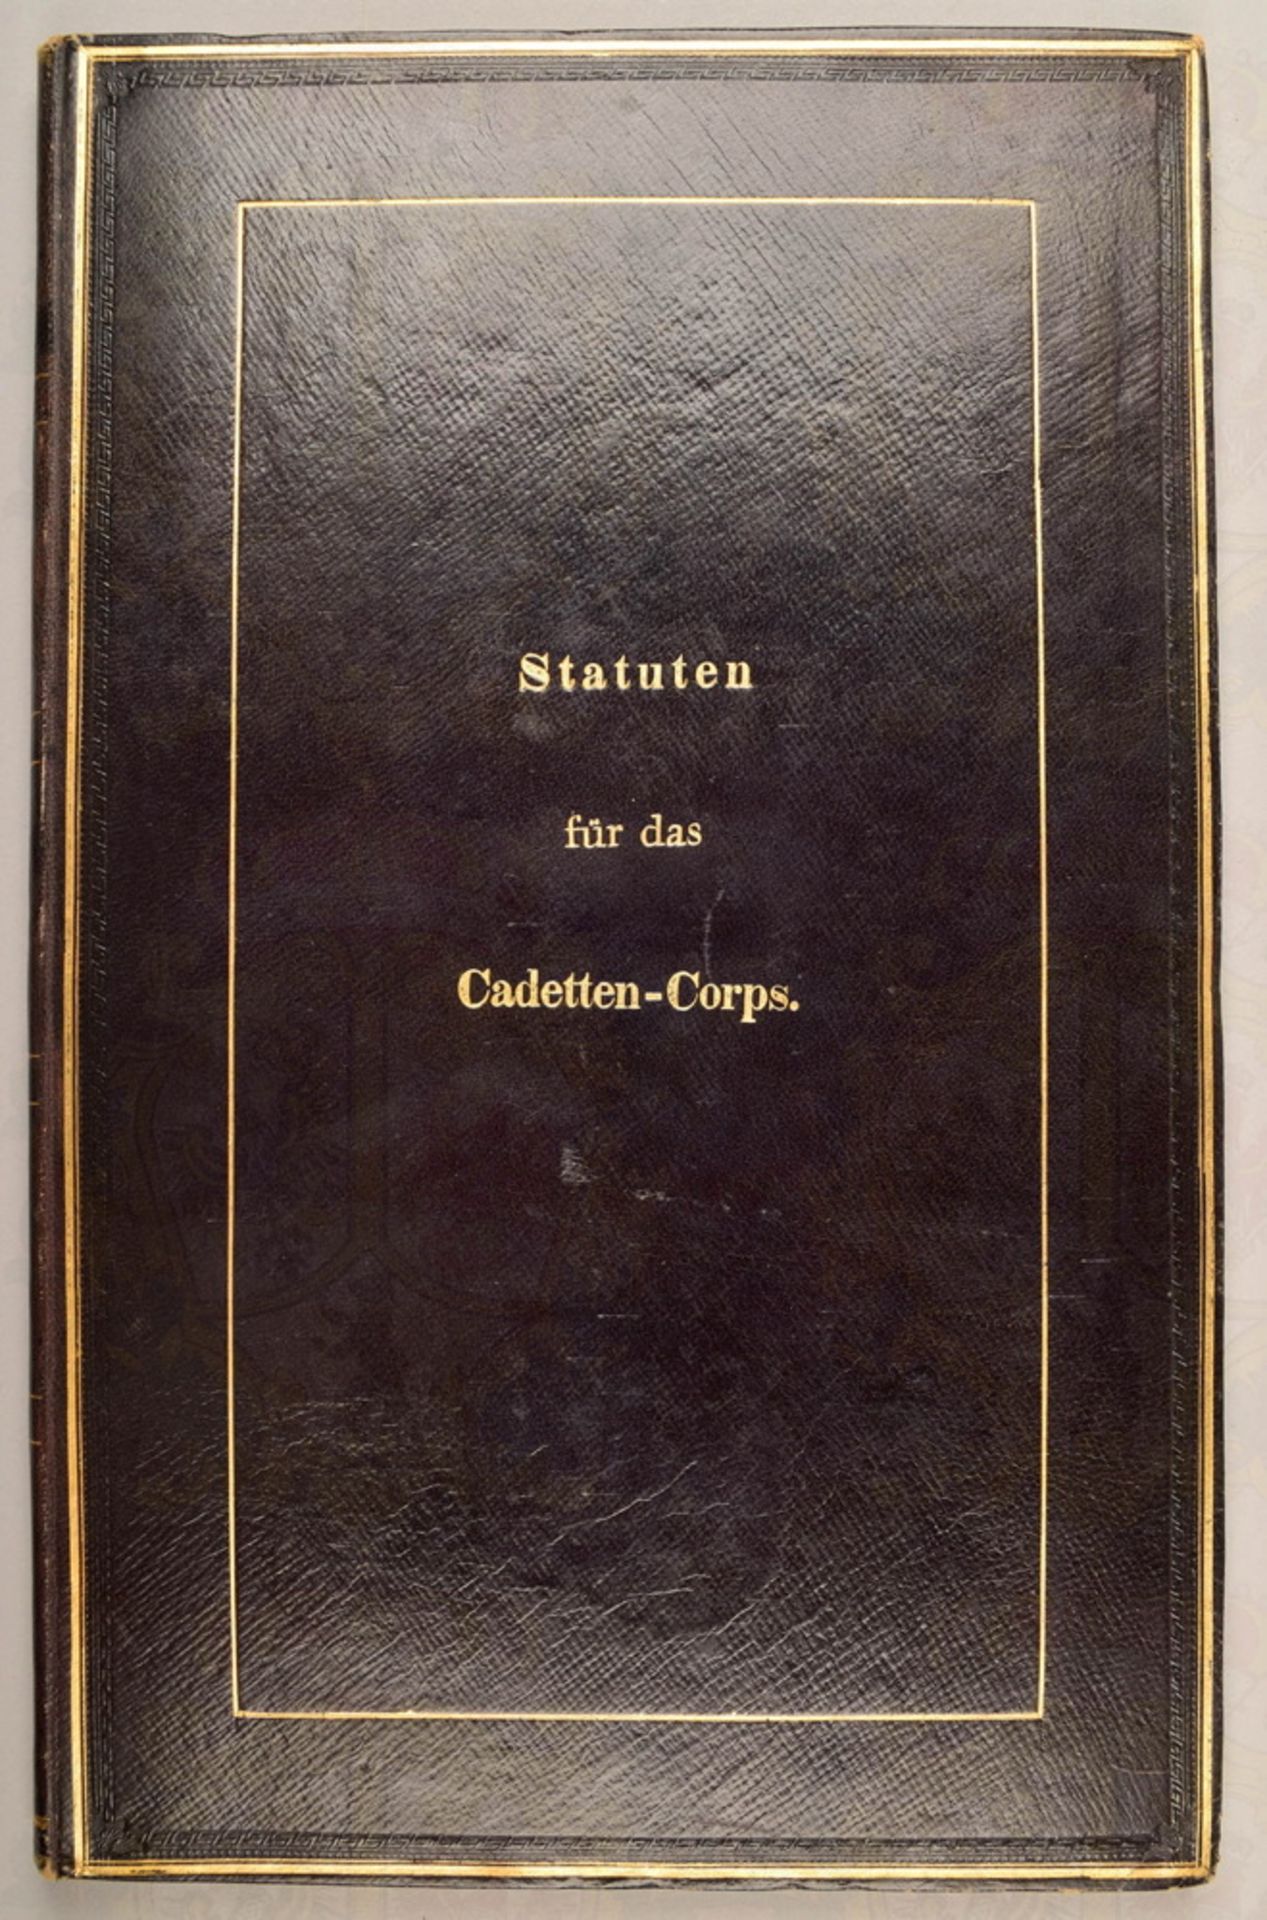 Statuten für das Cadetten-Corps